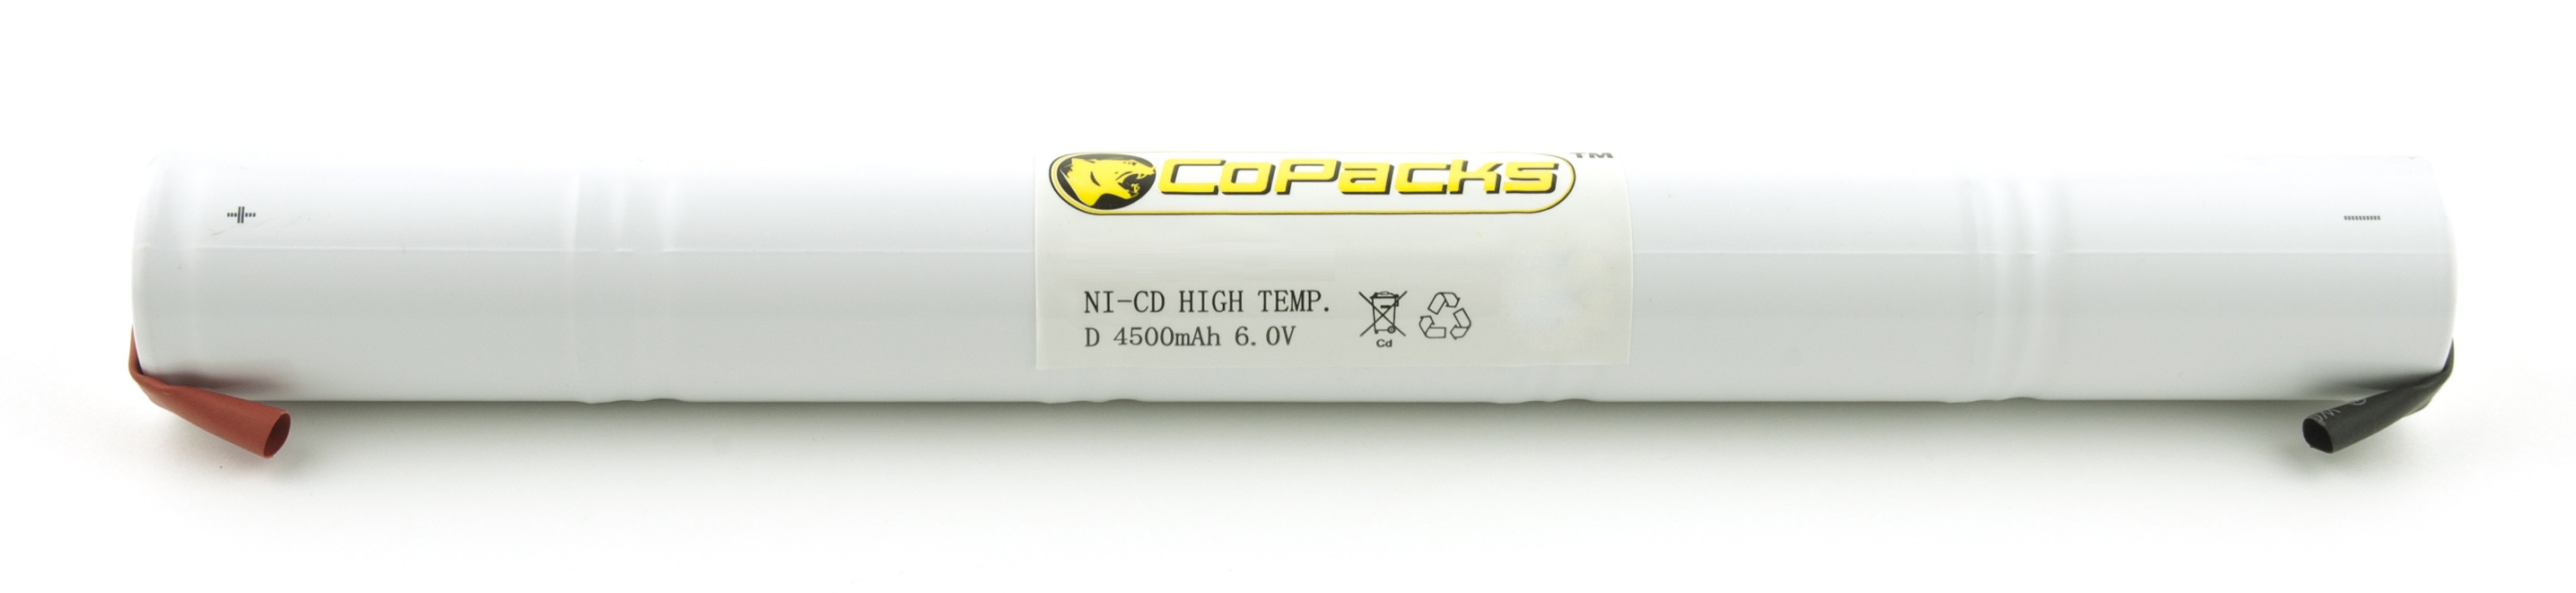 CoPacks NC Akku Not- und Sicherheitsbeleuchtung - D-Size